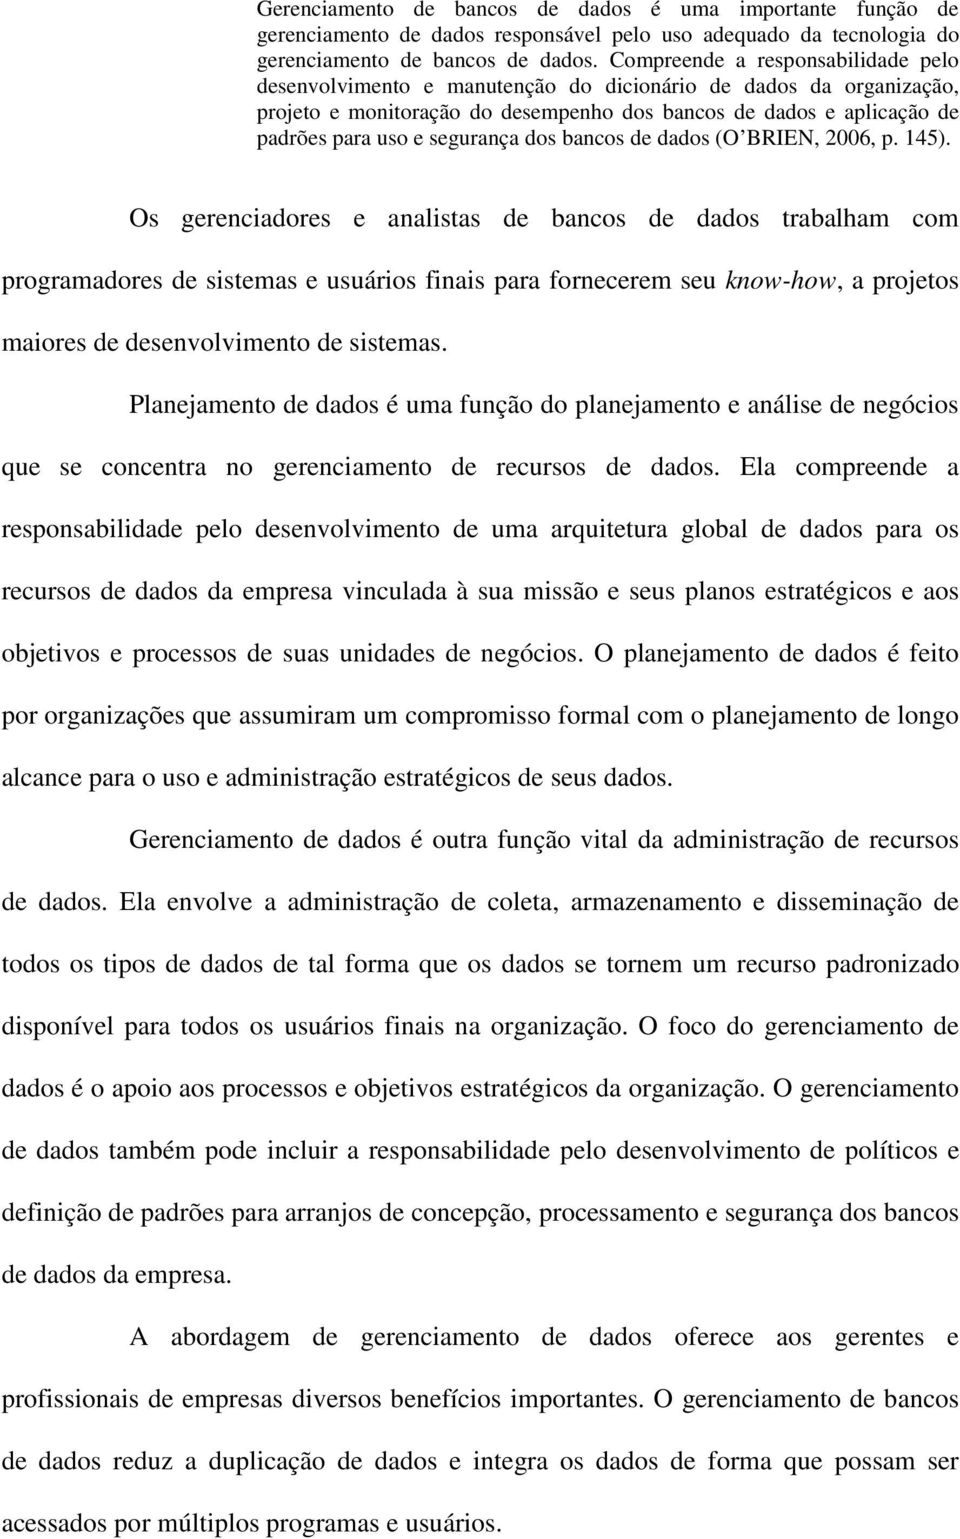 segurança dos bancos de dados (O BRIEN, 2006, p. 145).